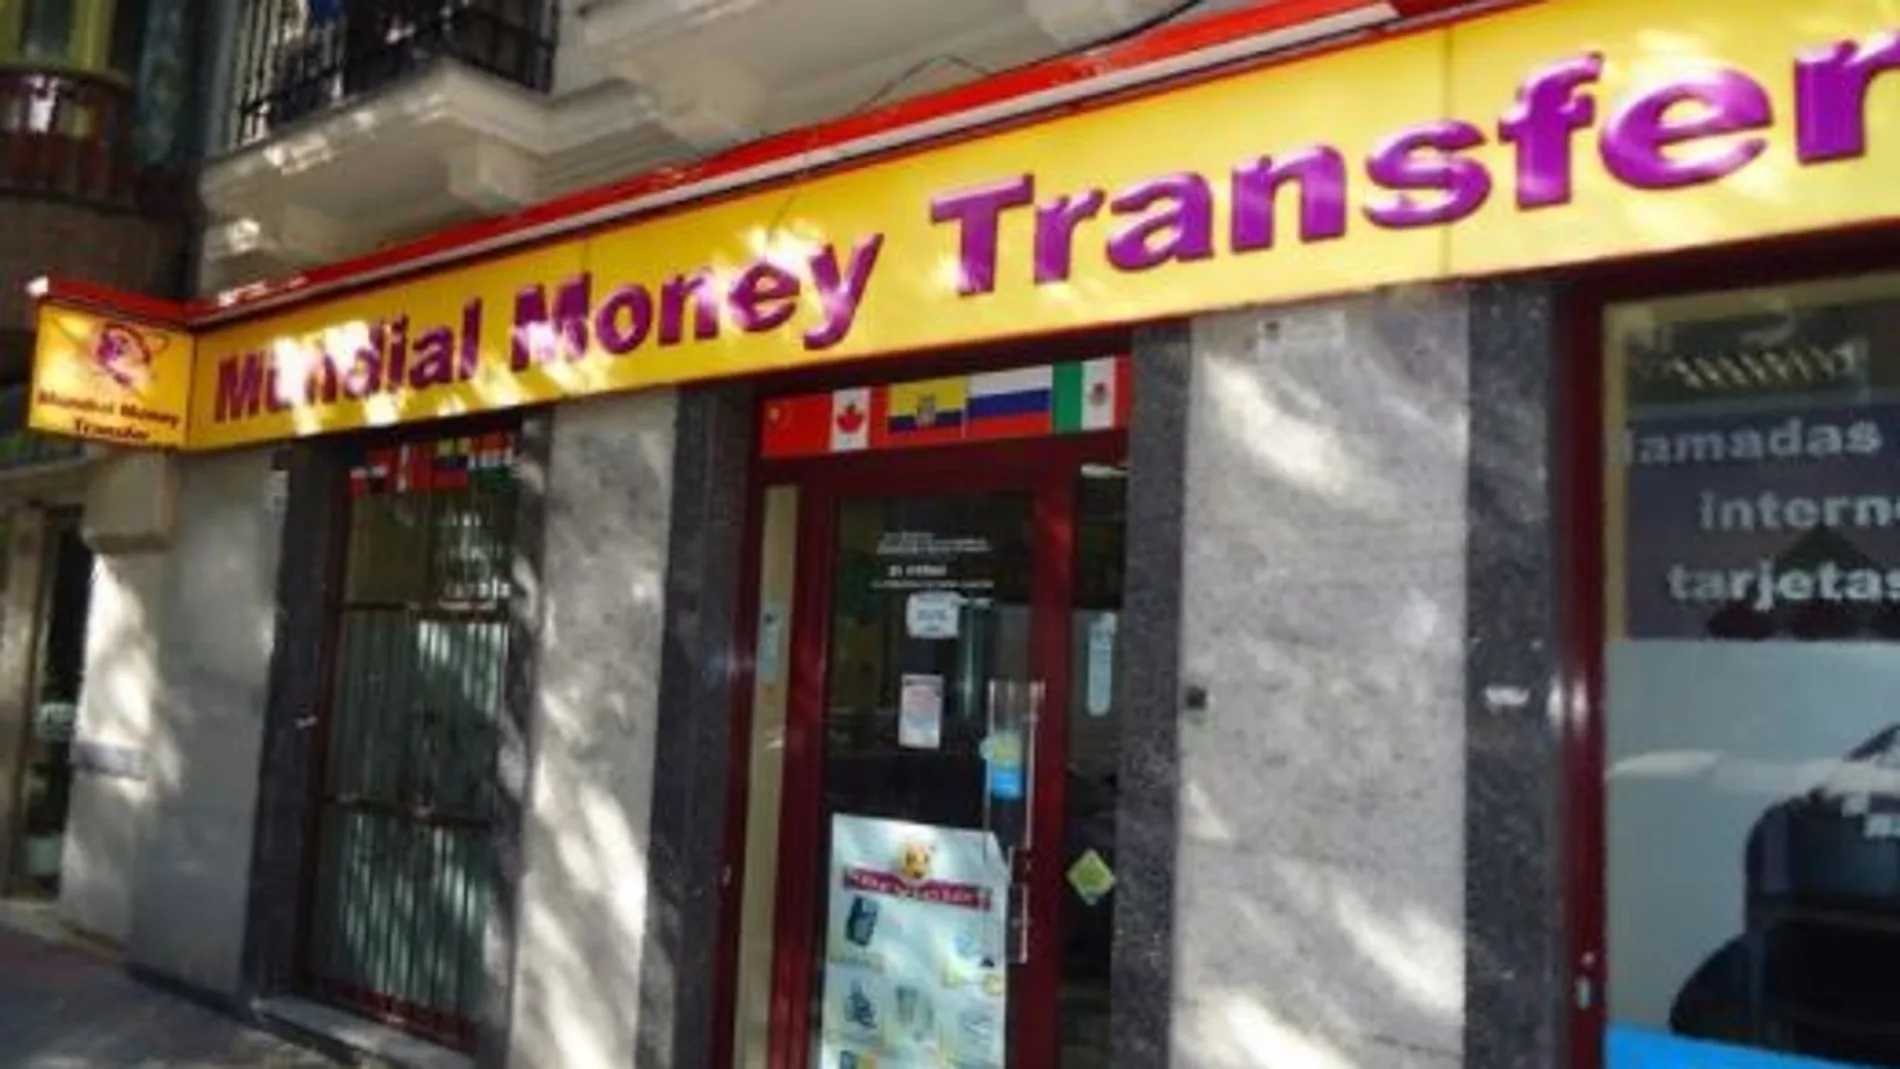 Fachada de una sucursal de Mundial Money Transfer en Madrid